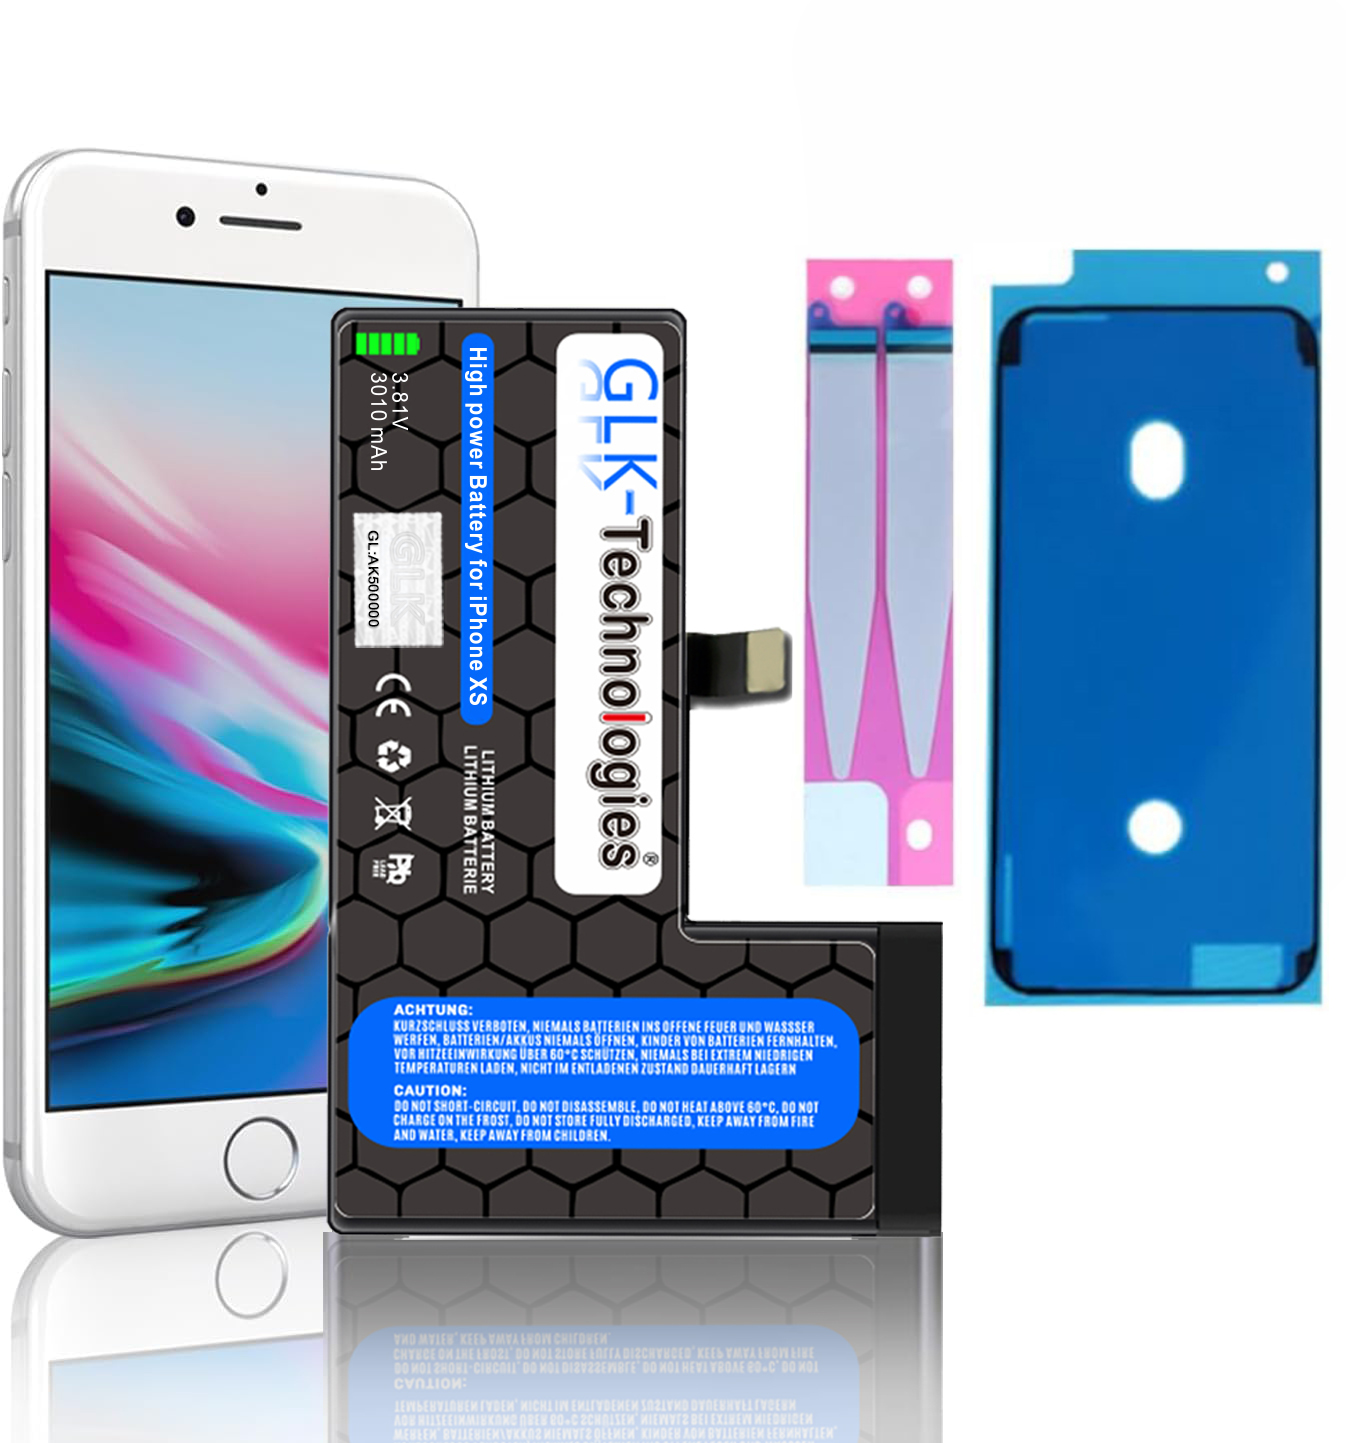 2X 2740mAh iPhone Li-Ion Akku, Klebebandsätze inkl. XS 3.8 Volt, GLK-TECHNOLOGIES Smartphone Ersatz Apple Lithium-Ionen,